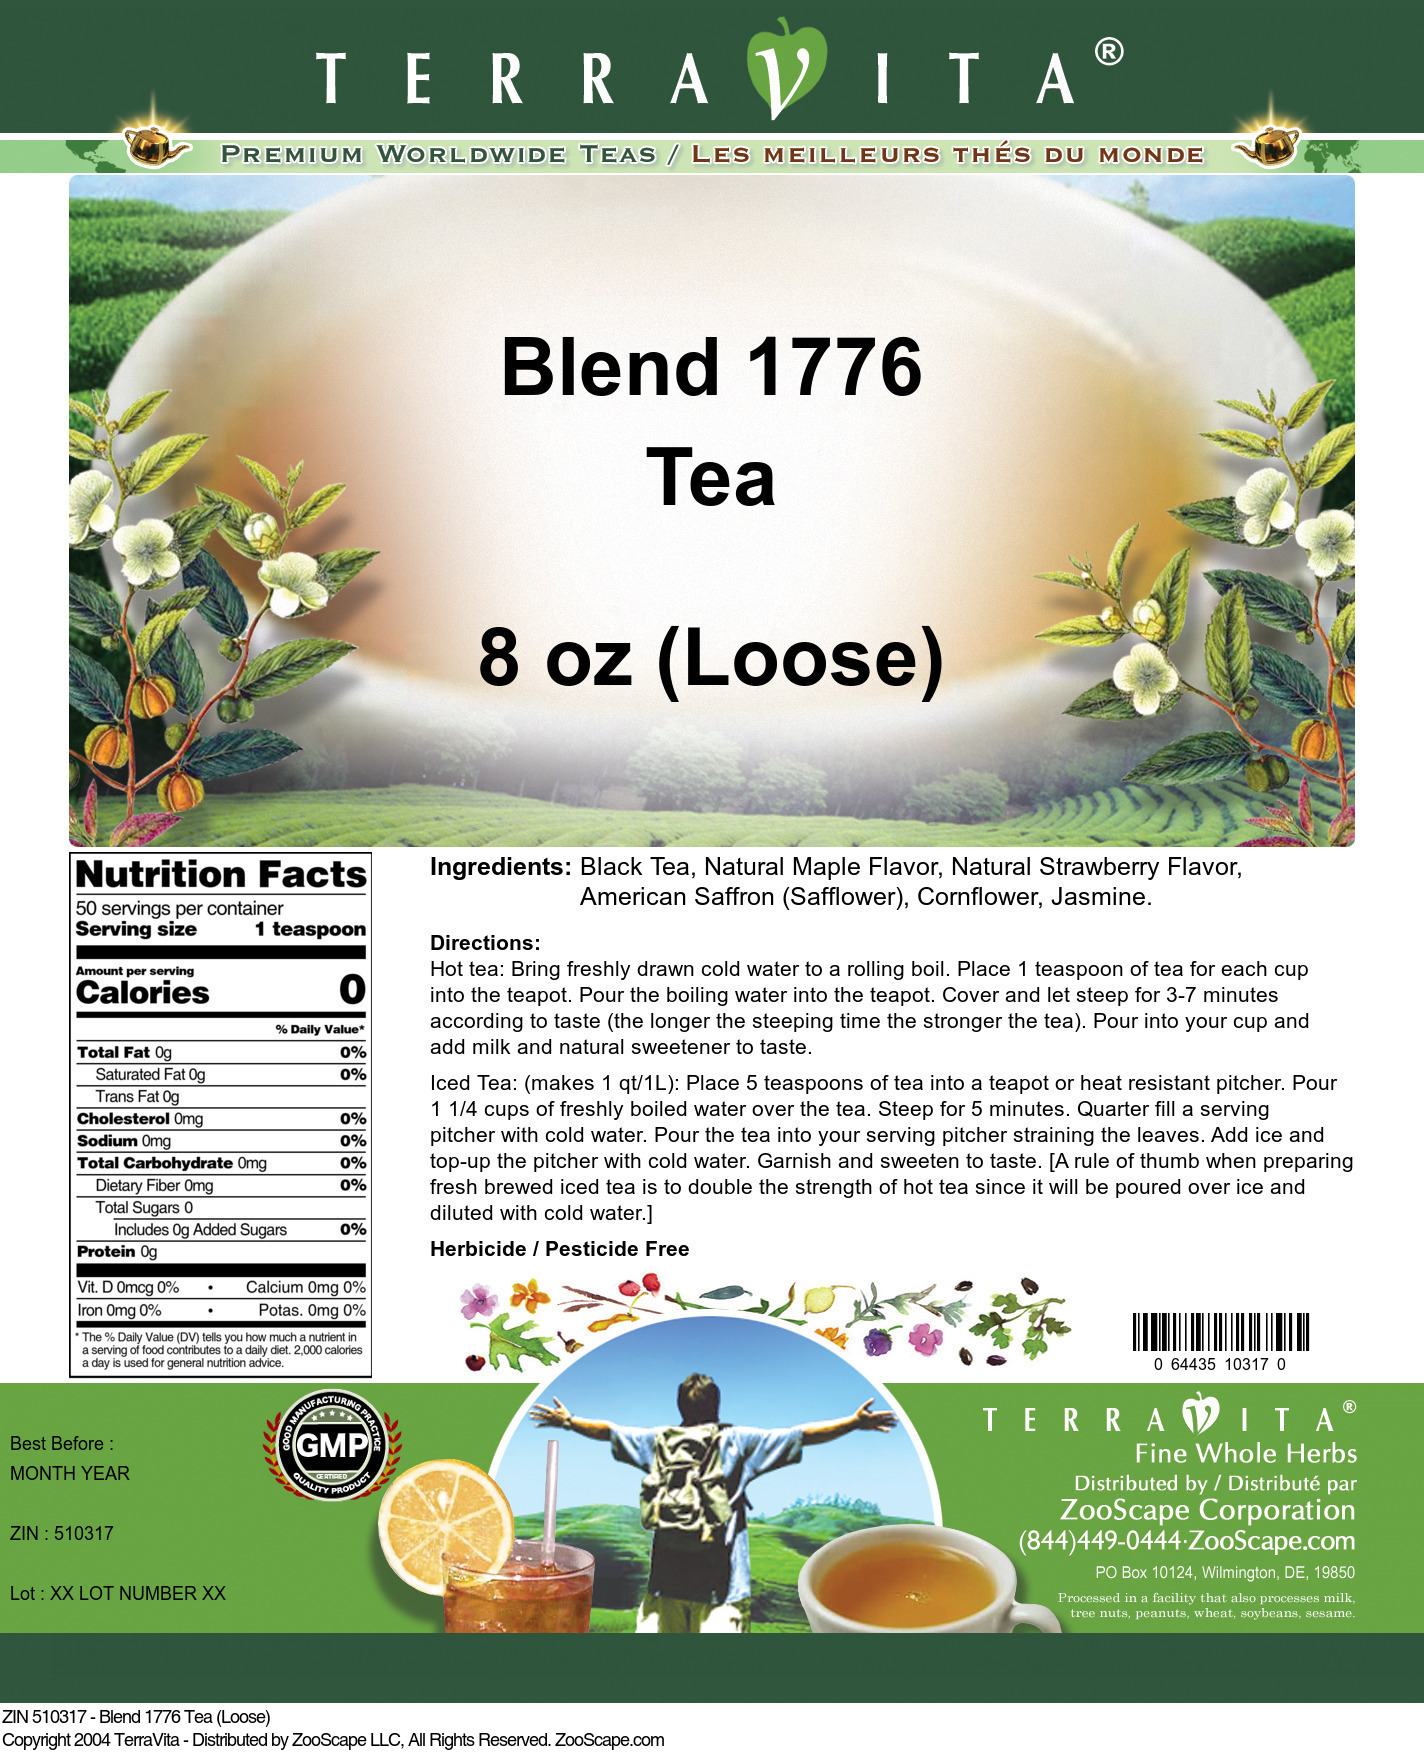 Blend 1776 Tea (Loose) - Label